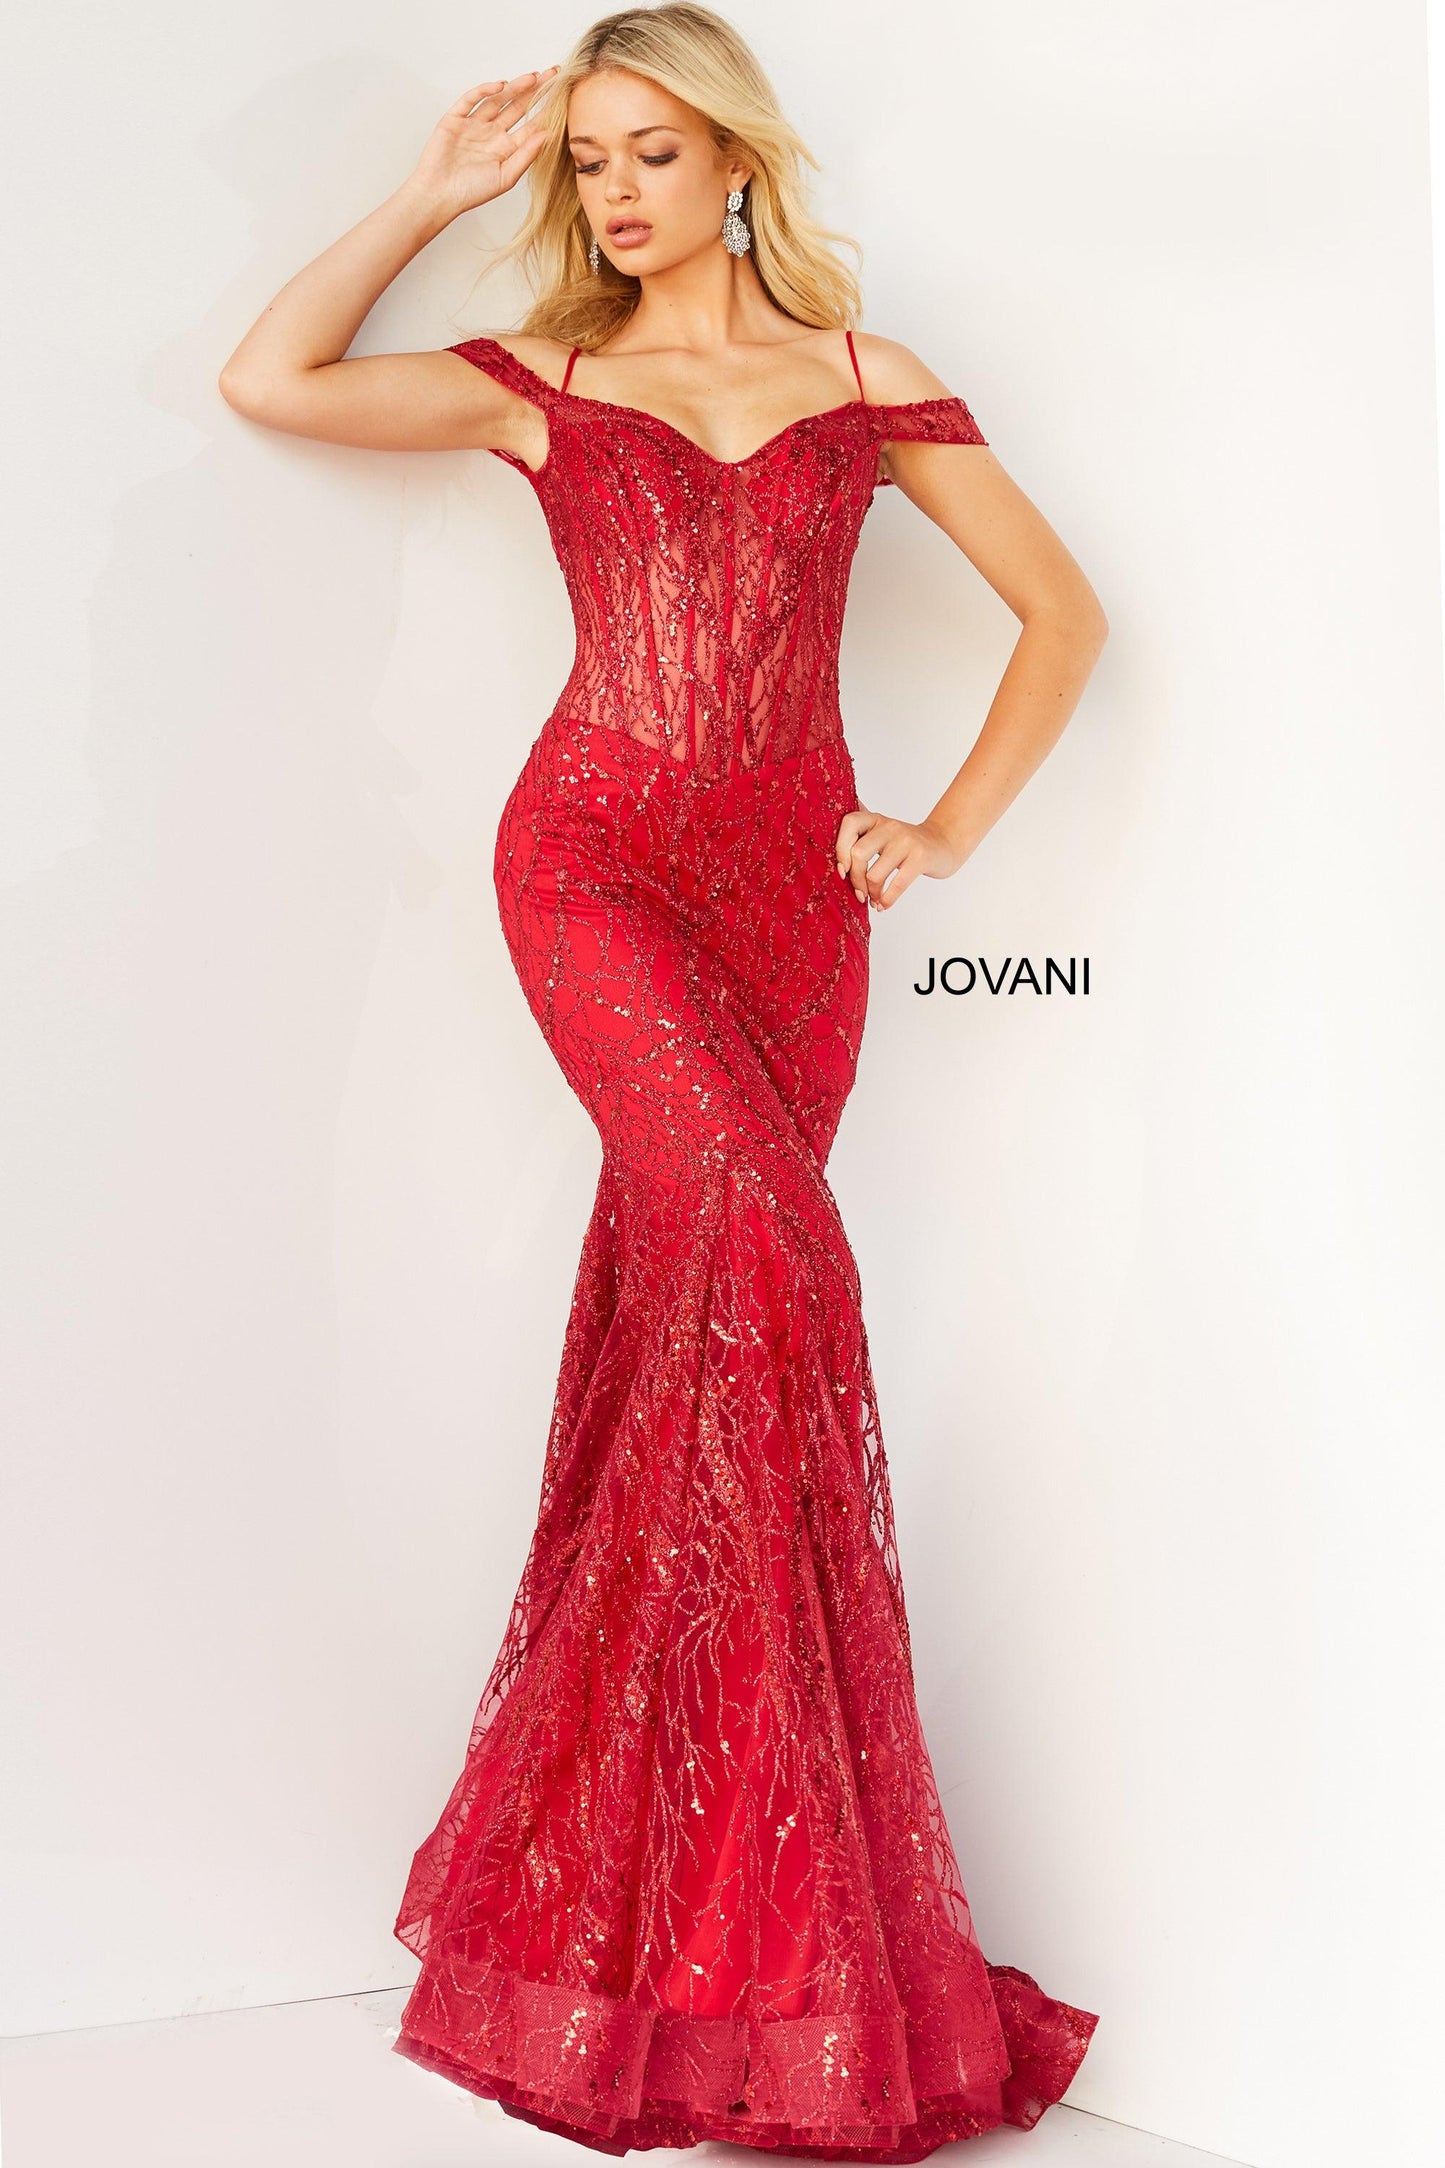 Jovani Prom Off Shoulder Long Formal Gown 05838 - The Dress Outlet